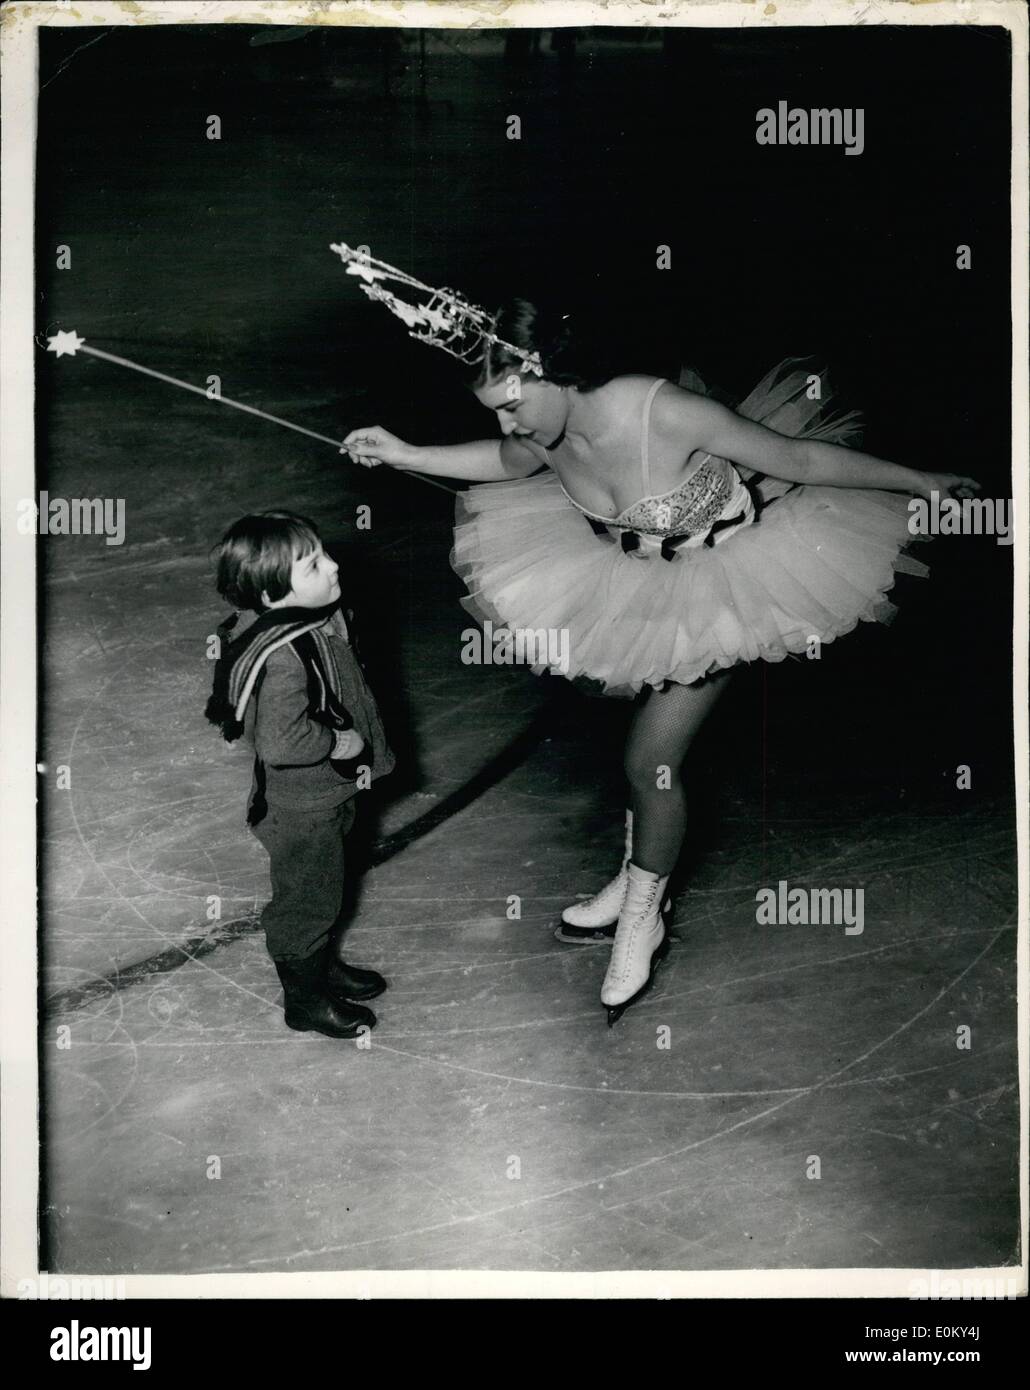 11 novembre 1952 - Noël Ice Pantomine Répétition. Joan et le jeune admirateur : Les répétitions ont commencé ce matin à l'Empress Hall de la pantomime sur la glace ''Jack et le haricot magique''- avec Belita posée est. Photo montre 20 ans Joan Connell, qui joue le rôle de ''Fairy Queen'' - chats d'un peu d'admirateur 4 ans Angela Jean Pringle - lors d'une pause en répétition ce matin. Banque D'Images